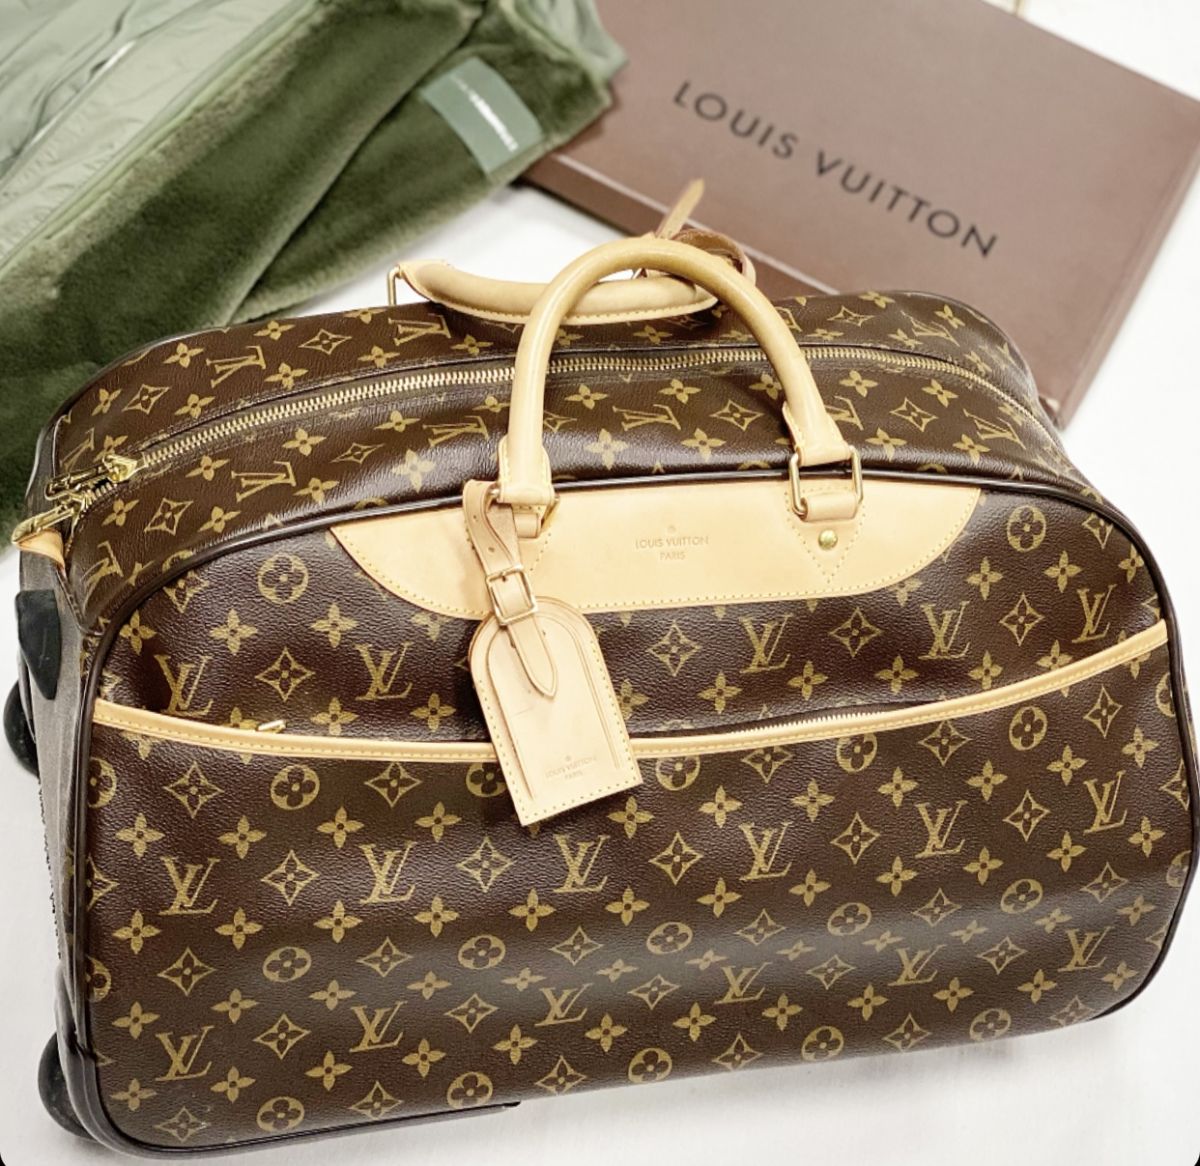 
Чемодан Louis Vuitton размер 50/30 цена 107 695 руб 